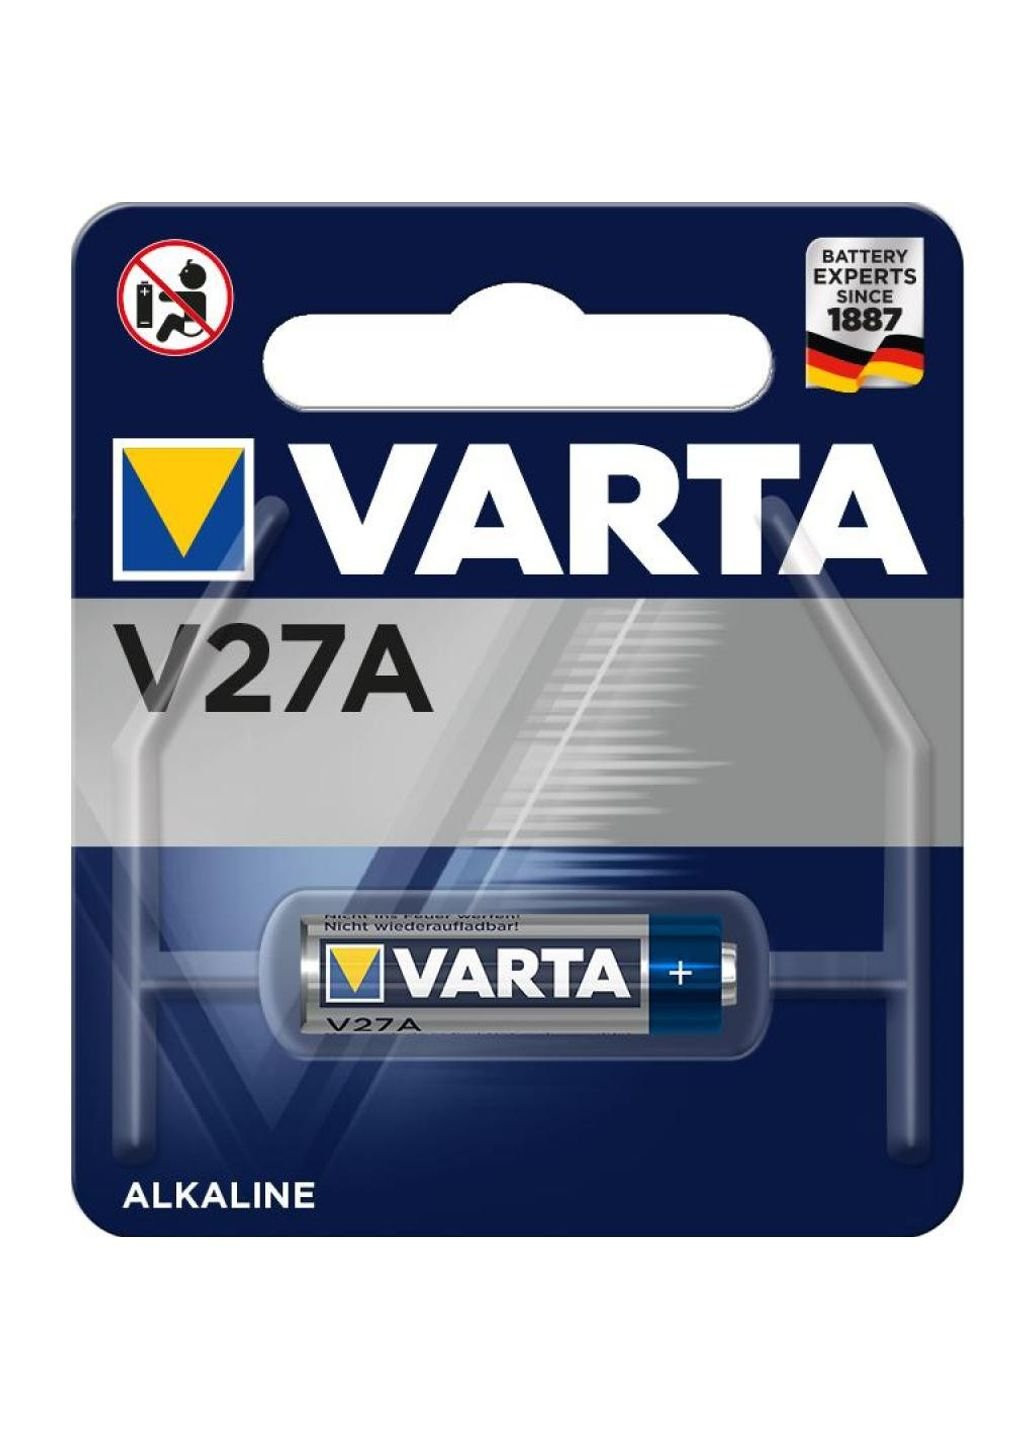 V27A батарея (04227101401) Varta (251412229)